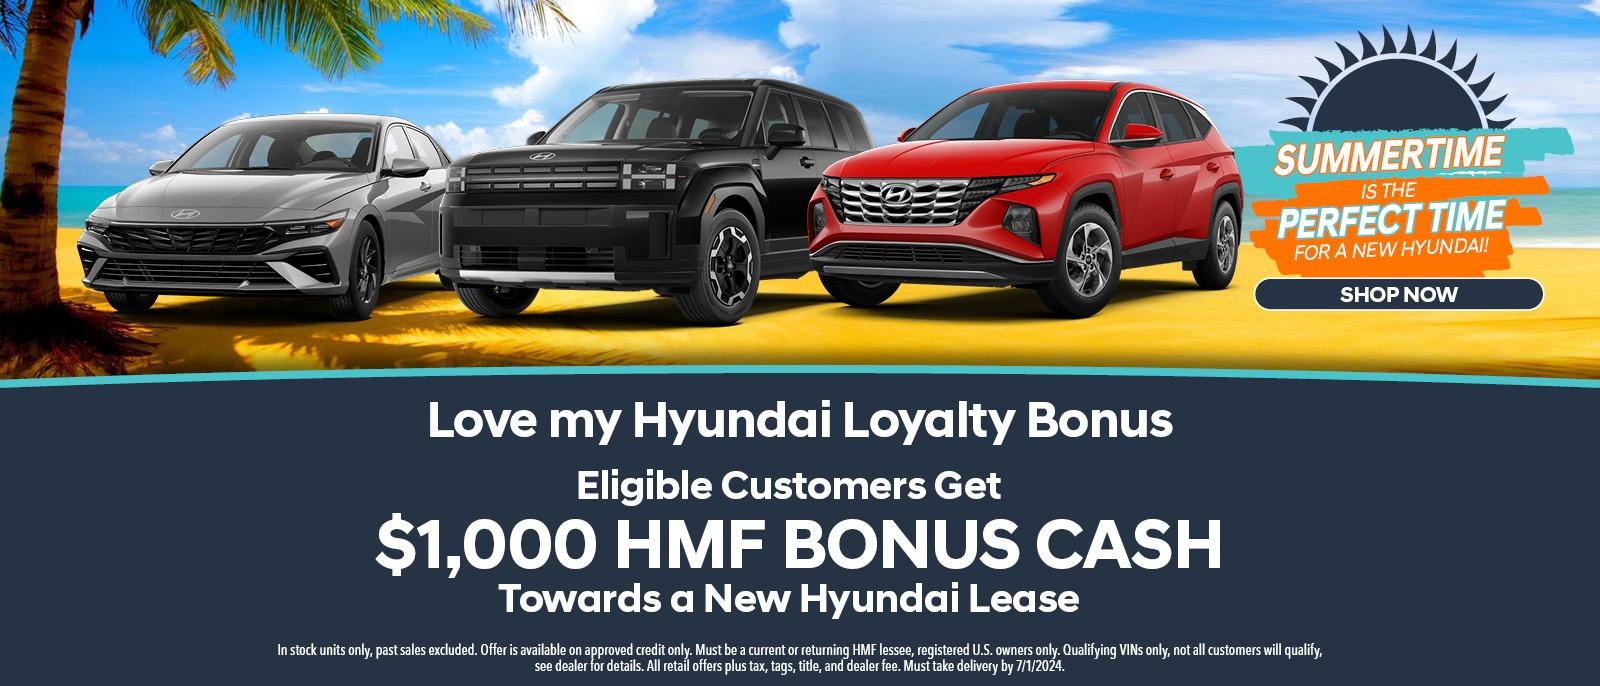 Love my Hyundai Loyalty Bonus